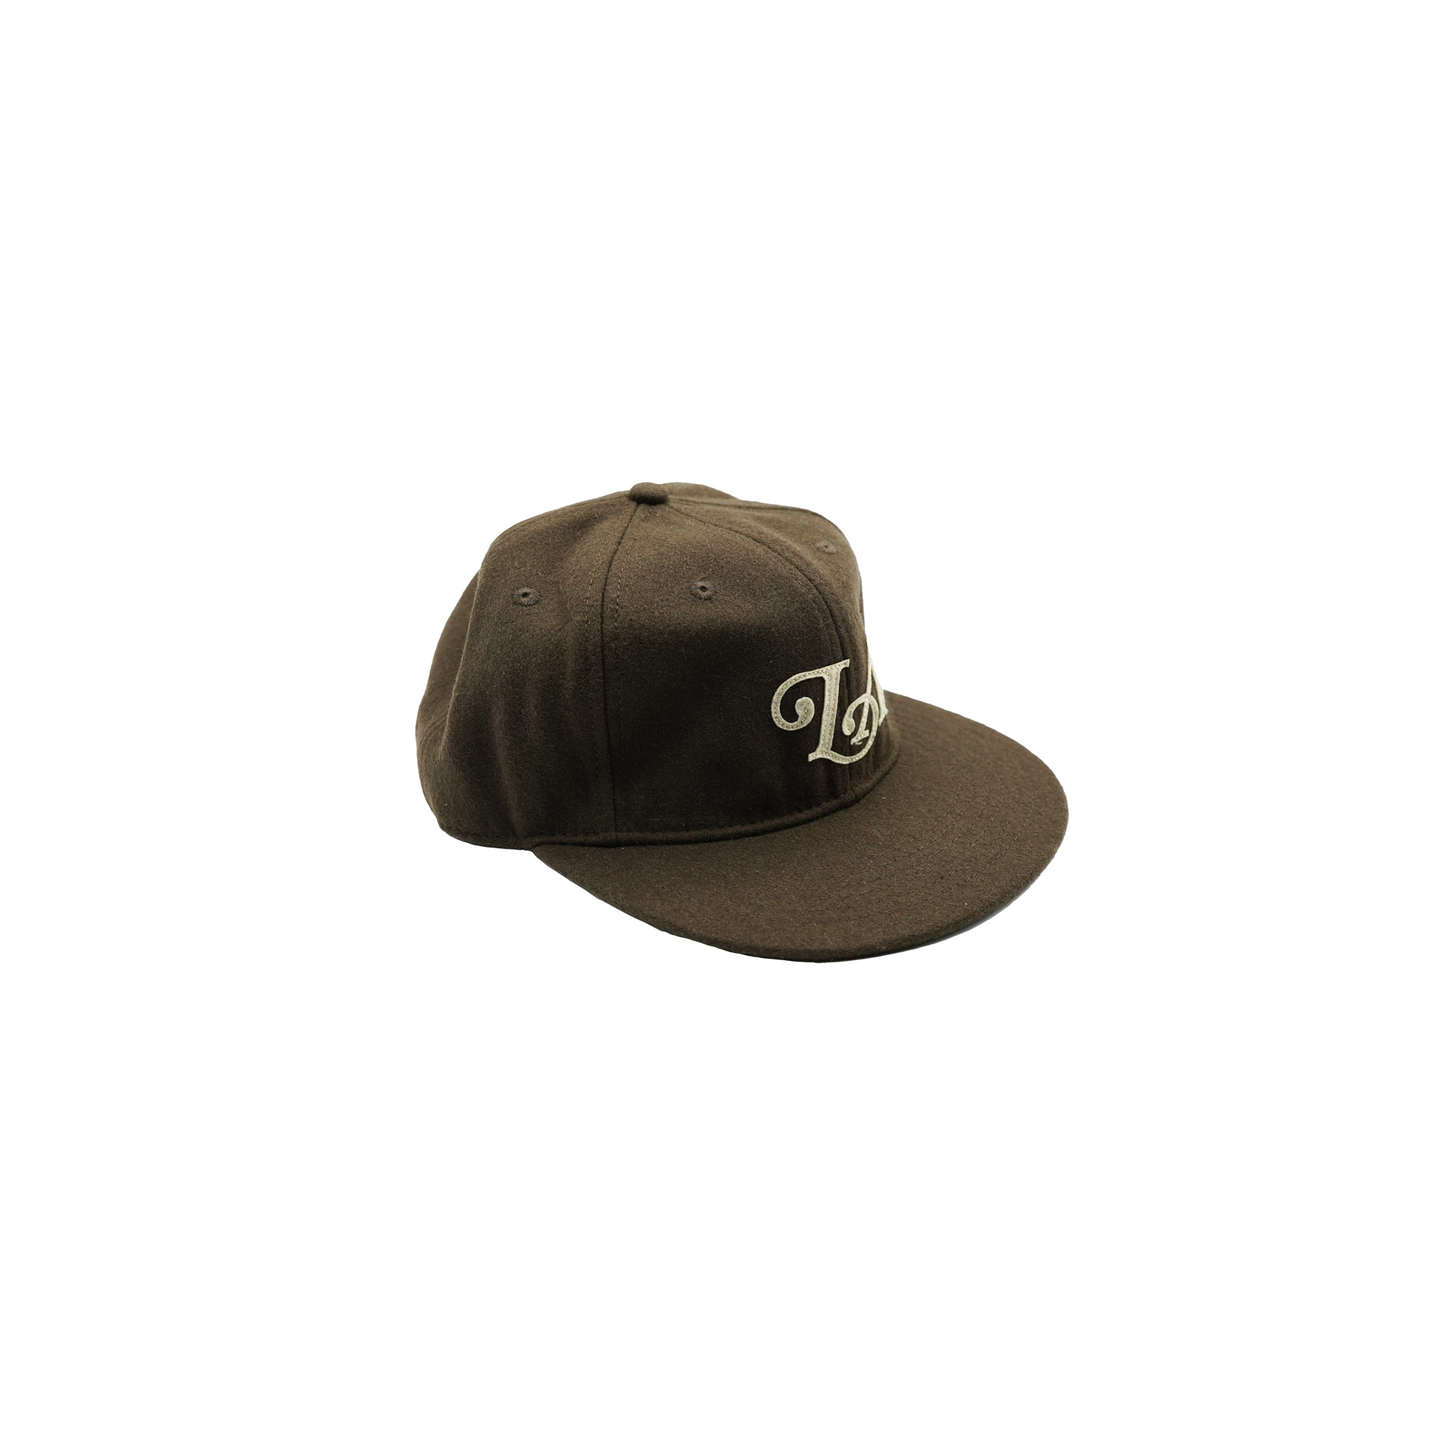 LA wool hat (brown)